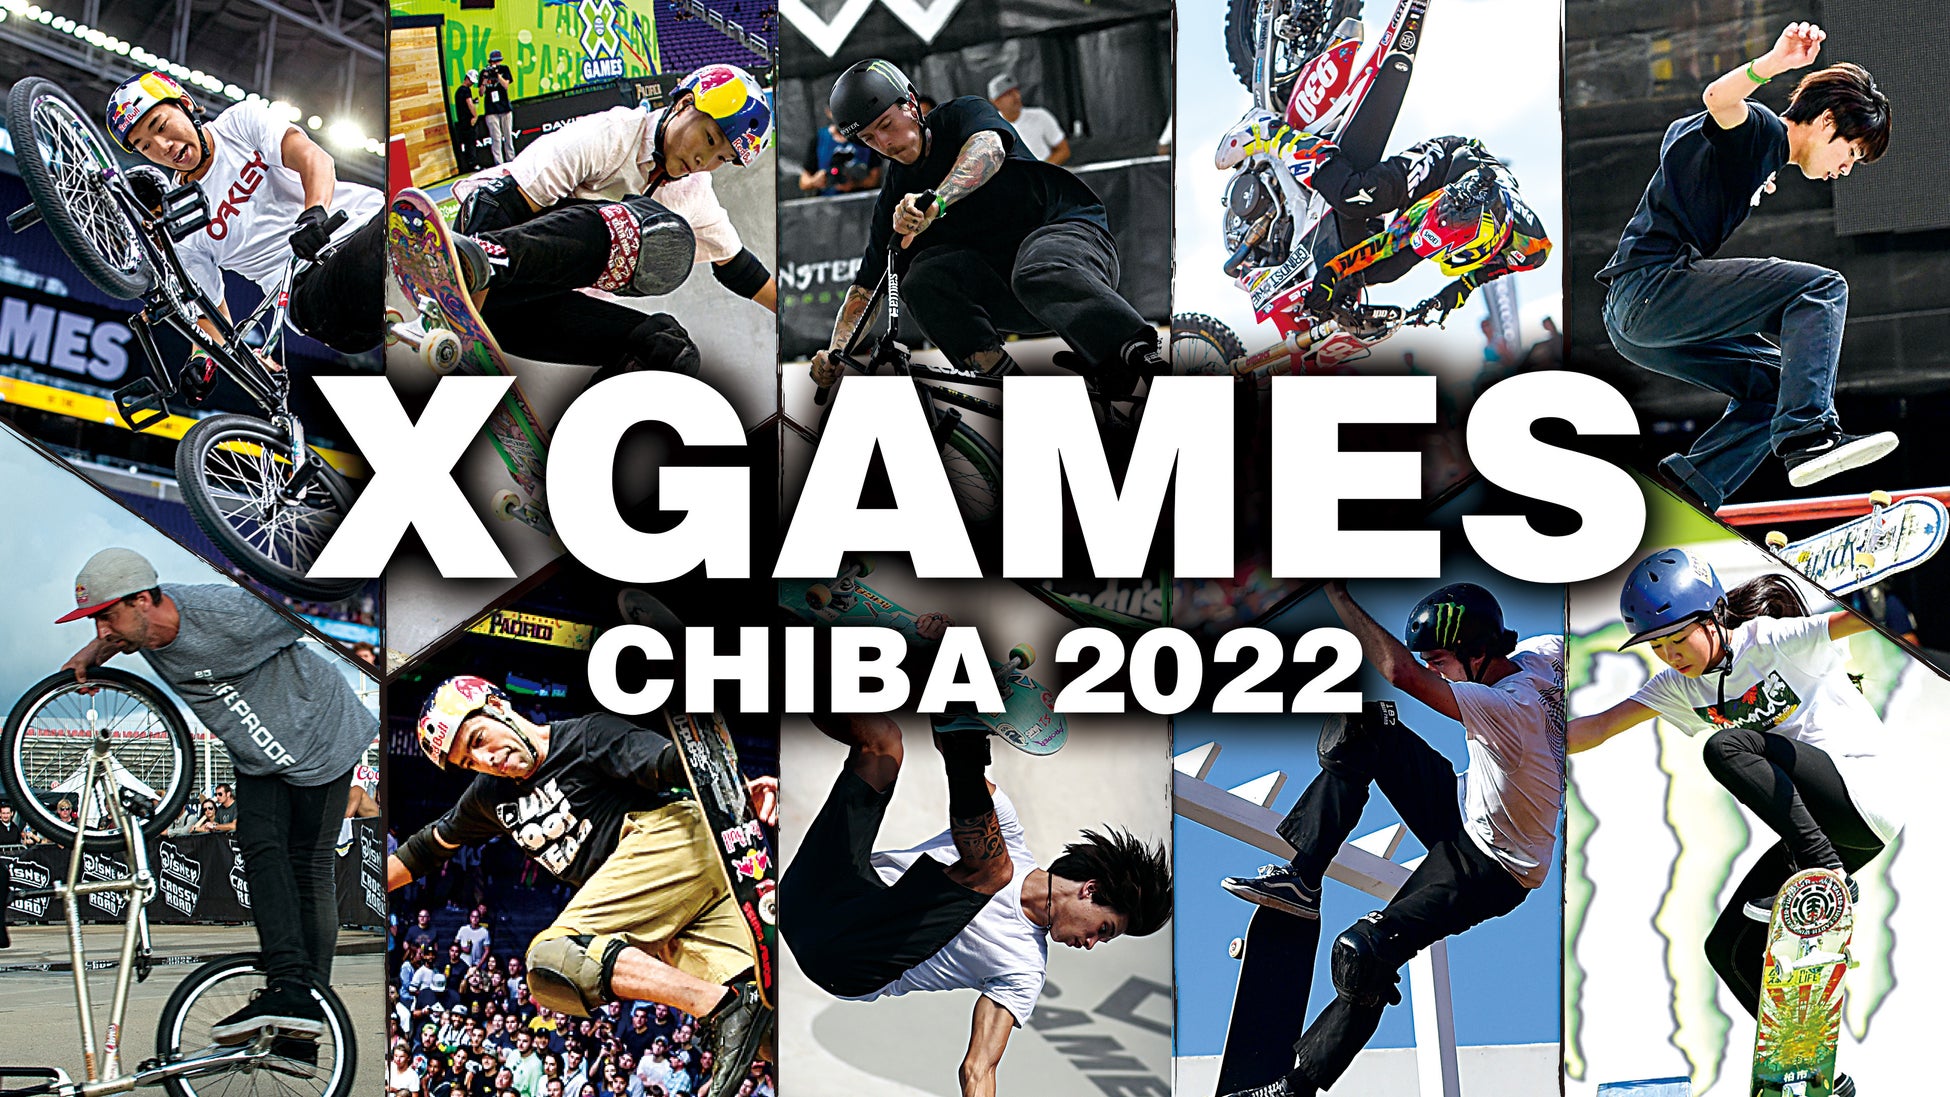 日本初上陸︕世界最大のアクションスポーツの国際競技会「X Games Chiba 2022 Presented by Yogibo」Huluで全競技をライブ配信、見逃し配信も決定︕